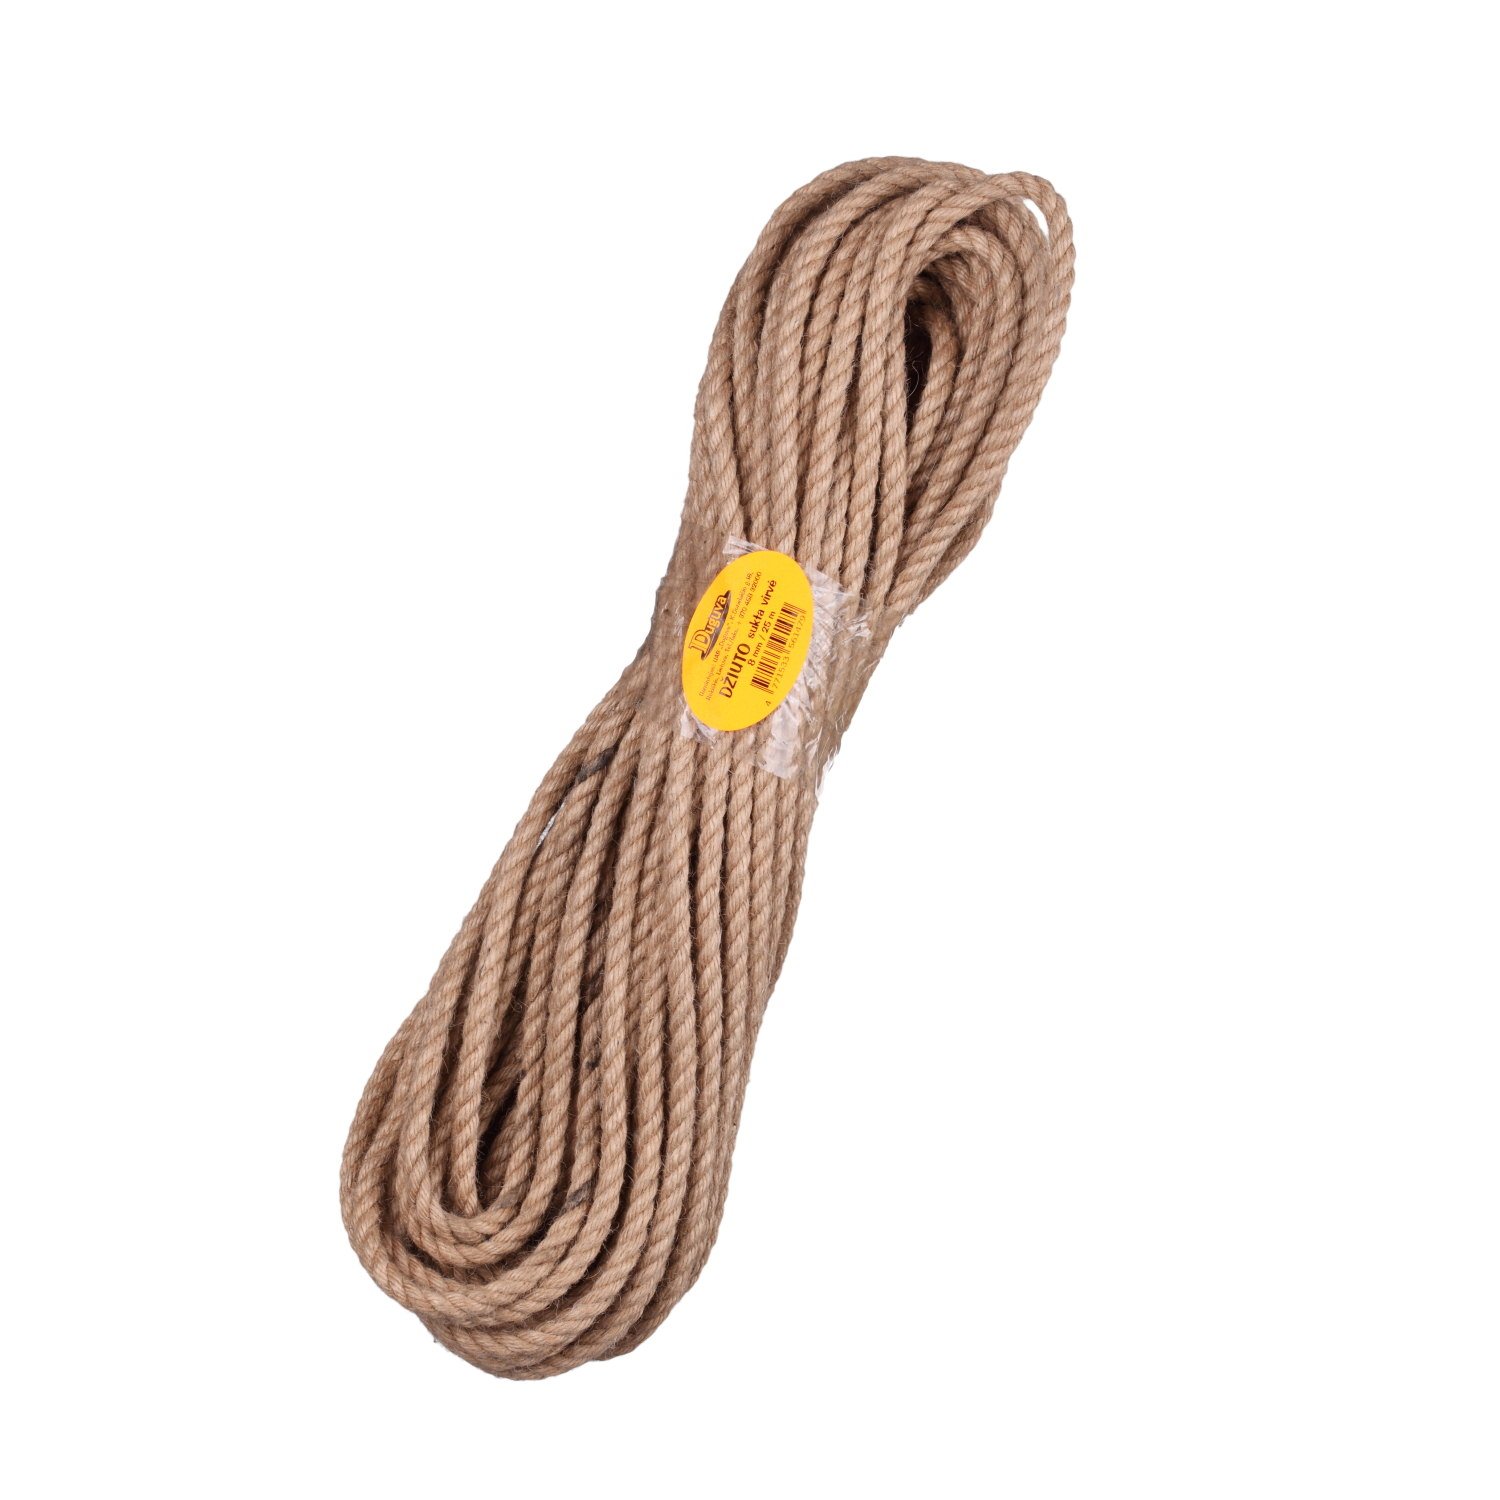 Sukta džiuto virvė, 8 mm x 25 m